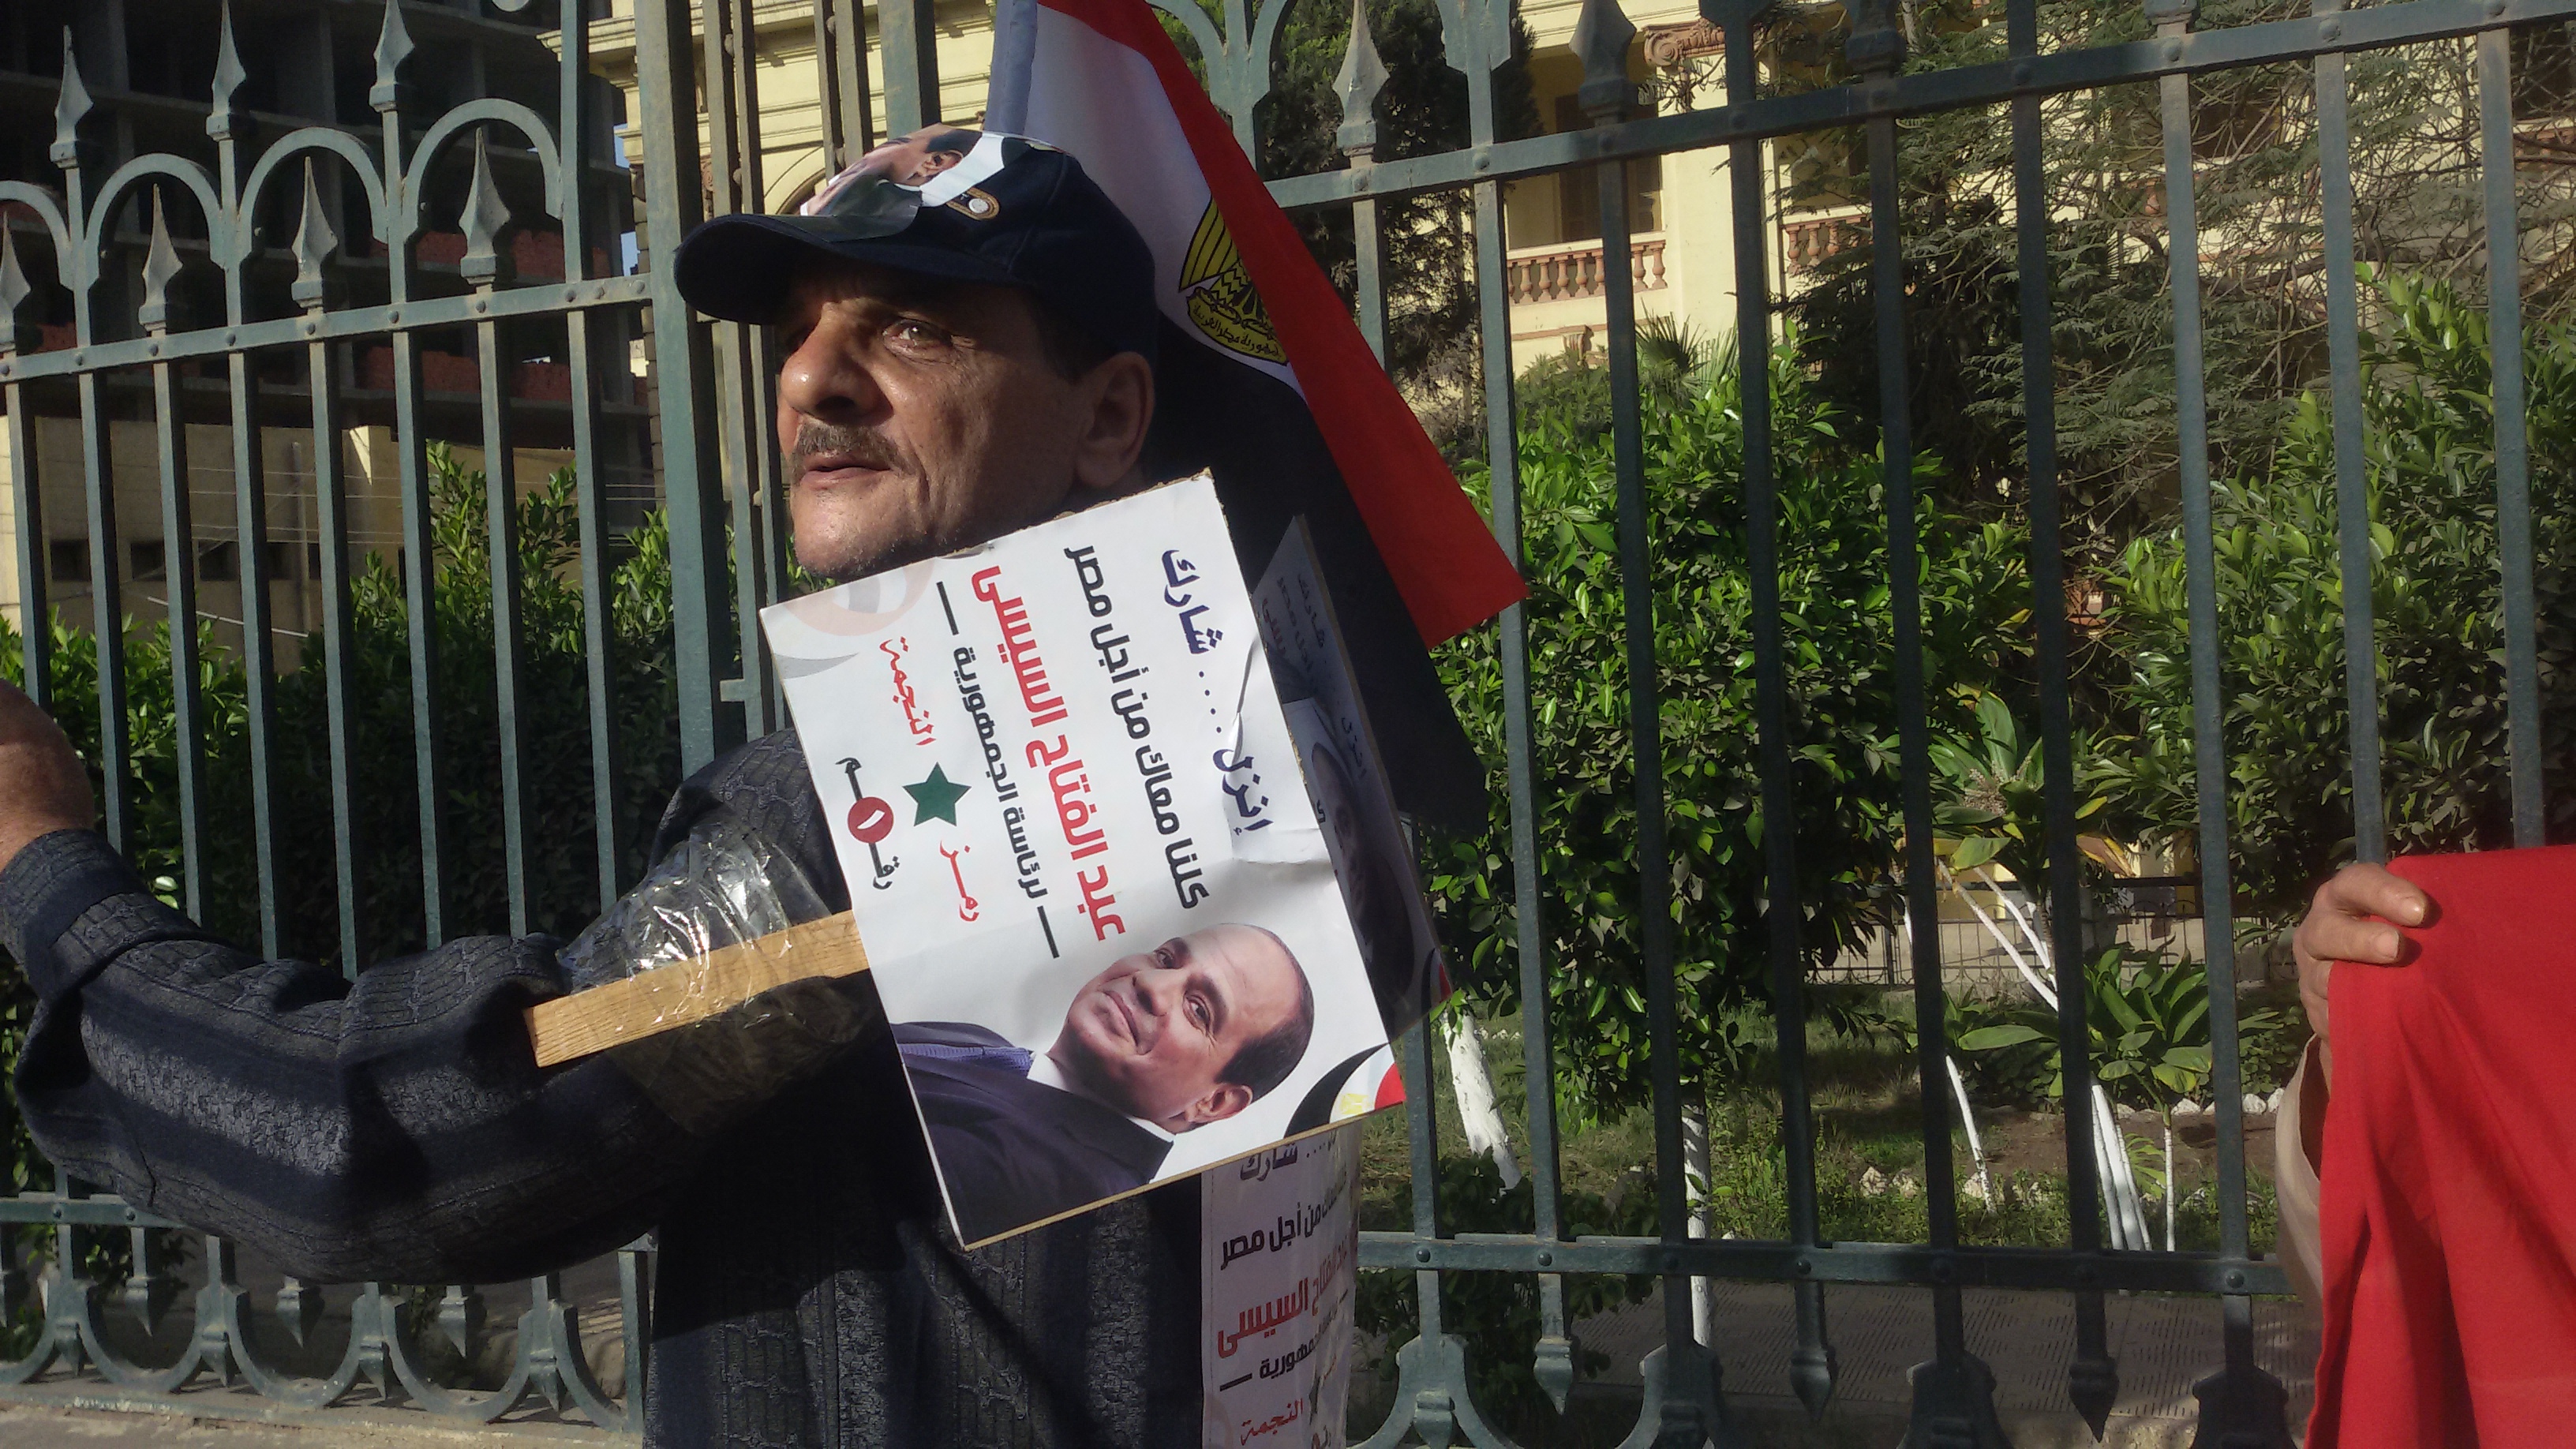 المواطن المنوفى يحمل على صدرة صورة الرئيس